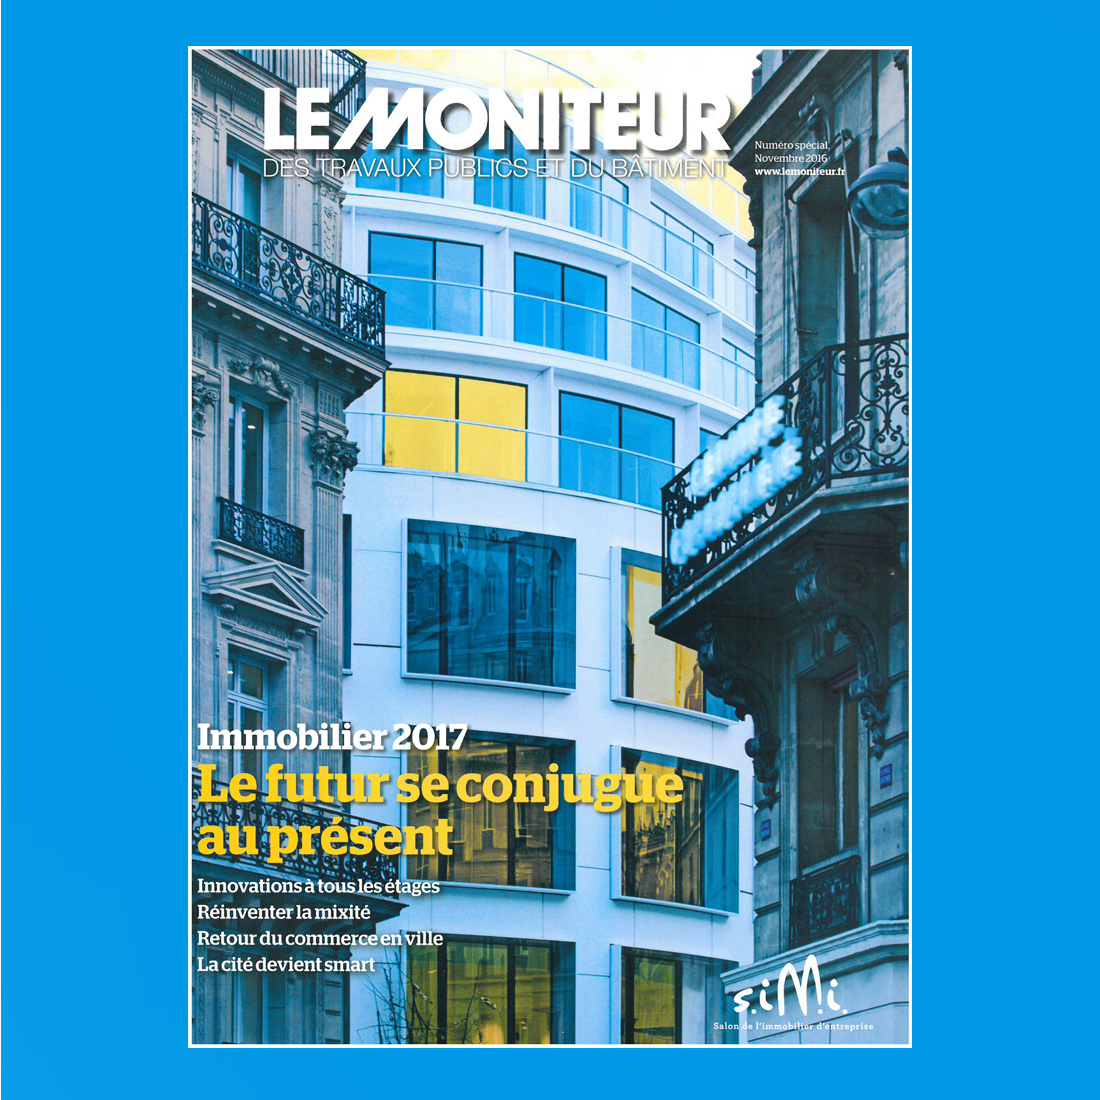 Le Moniteur Immobilier – june, 2017